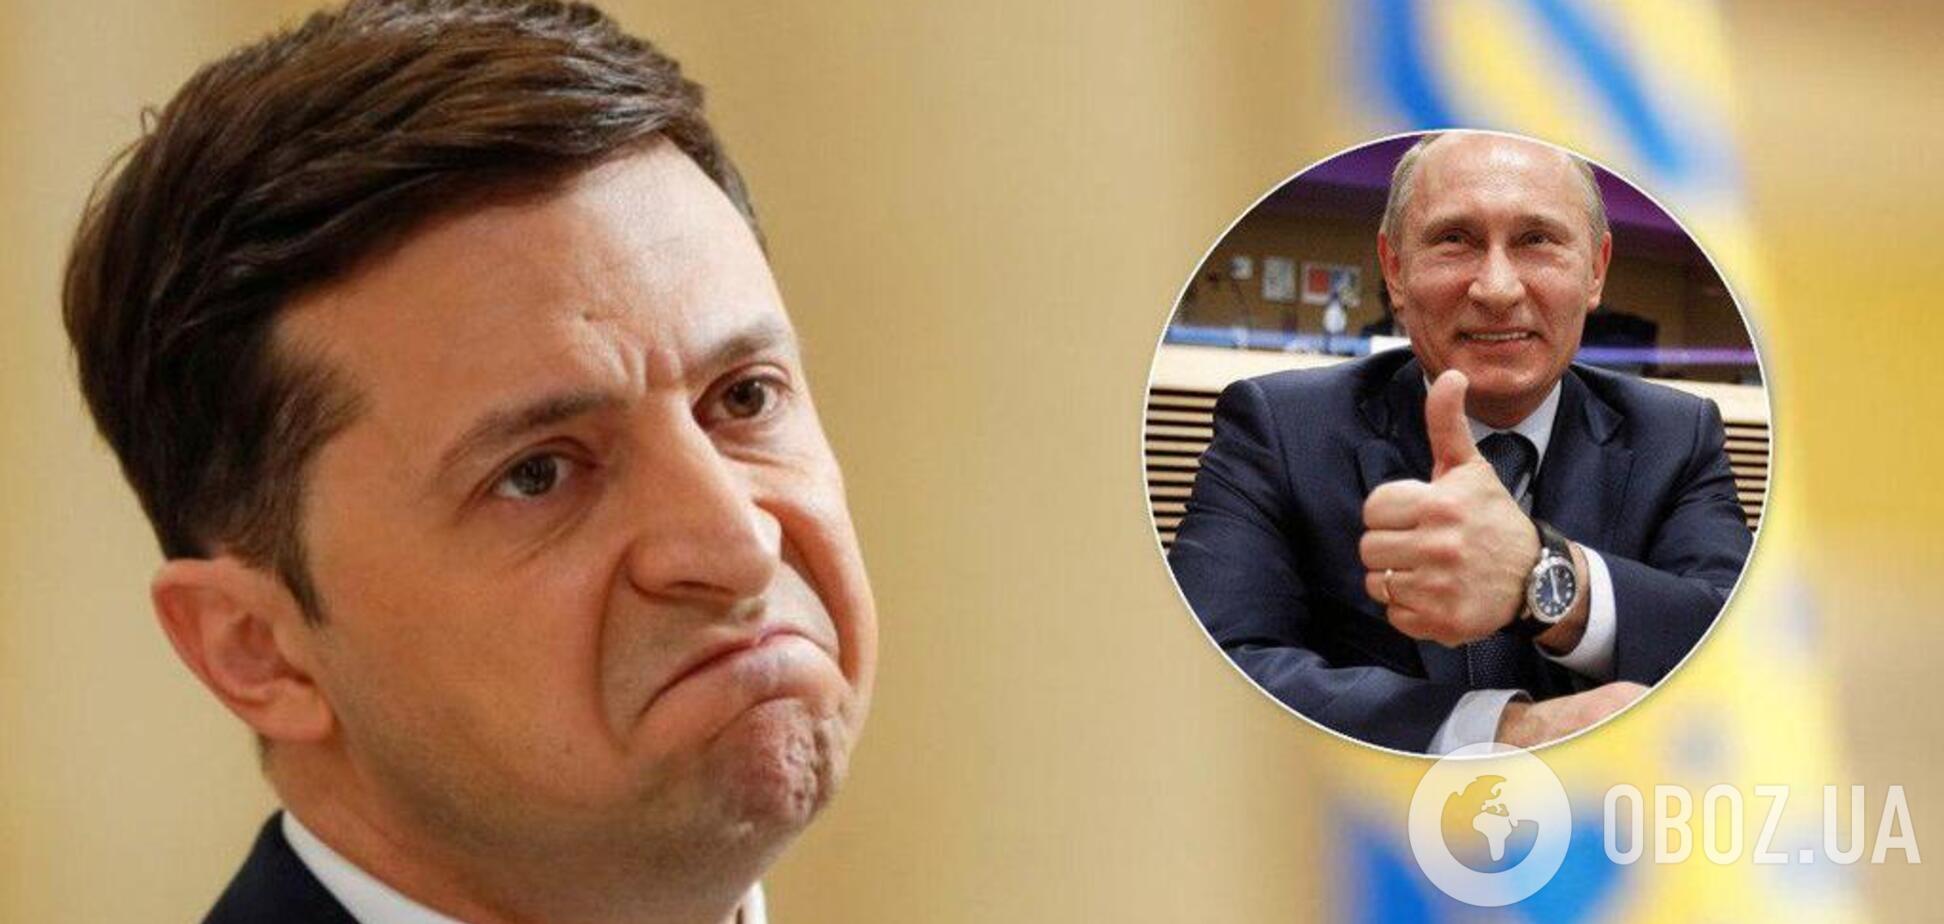 Путін пропонував Зеленському 'врятувати' Донбас? З'явилися нові деталі розмови